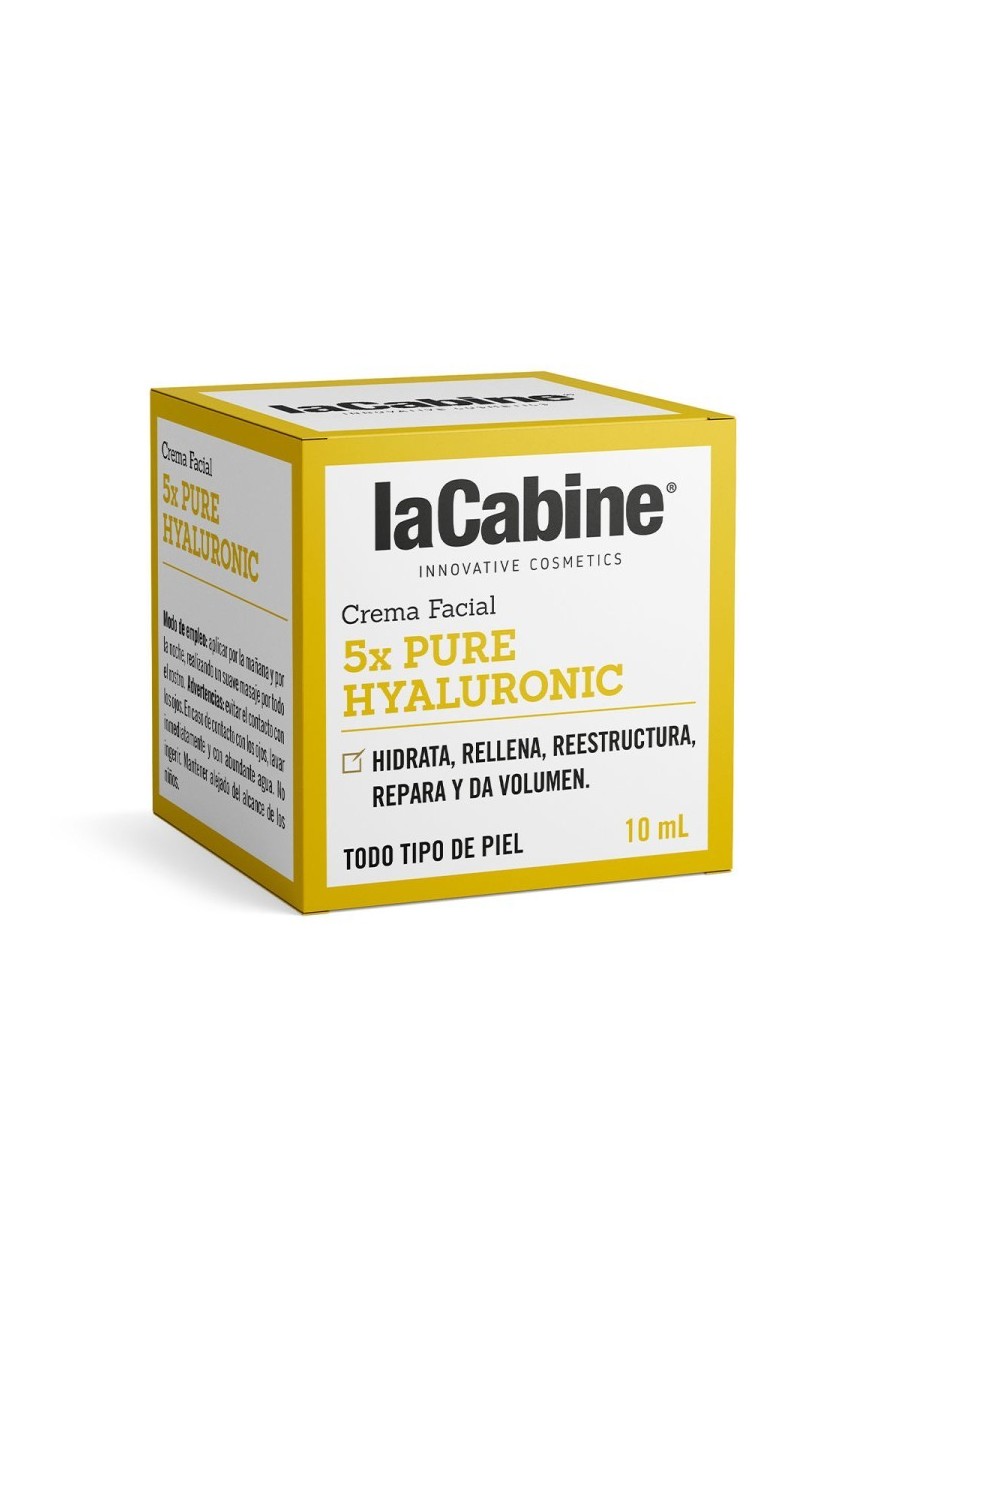 La Cabine 5x Pure Hyaluronic Cream 10ml